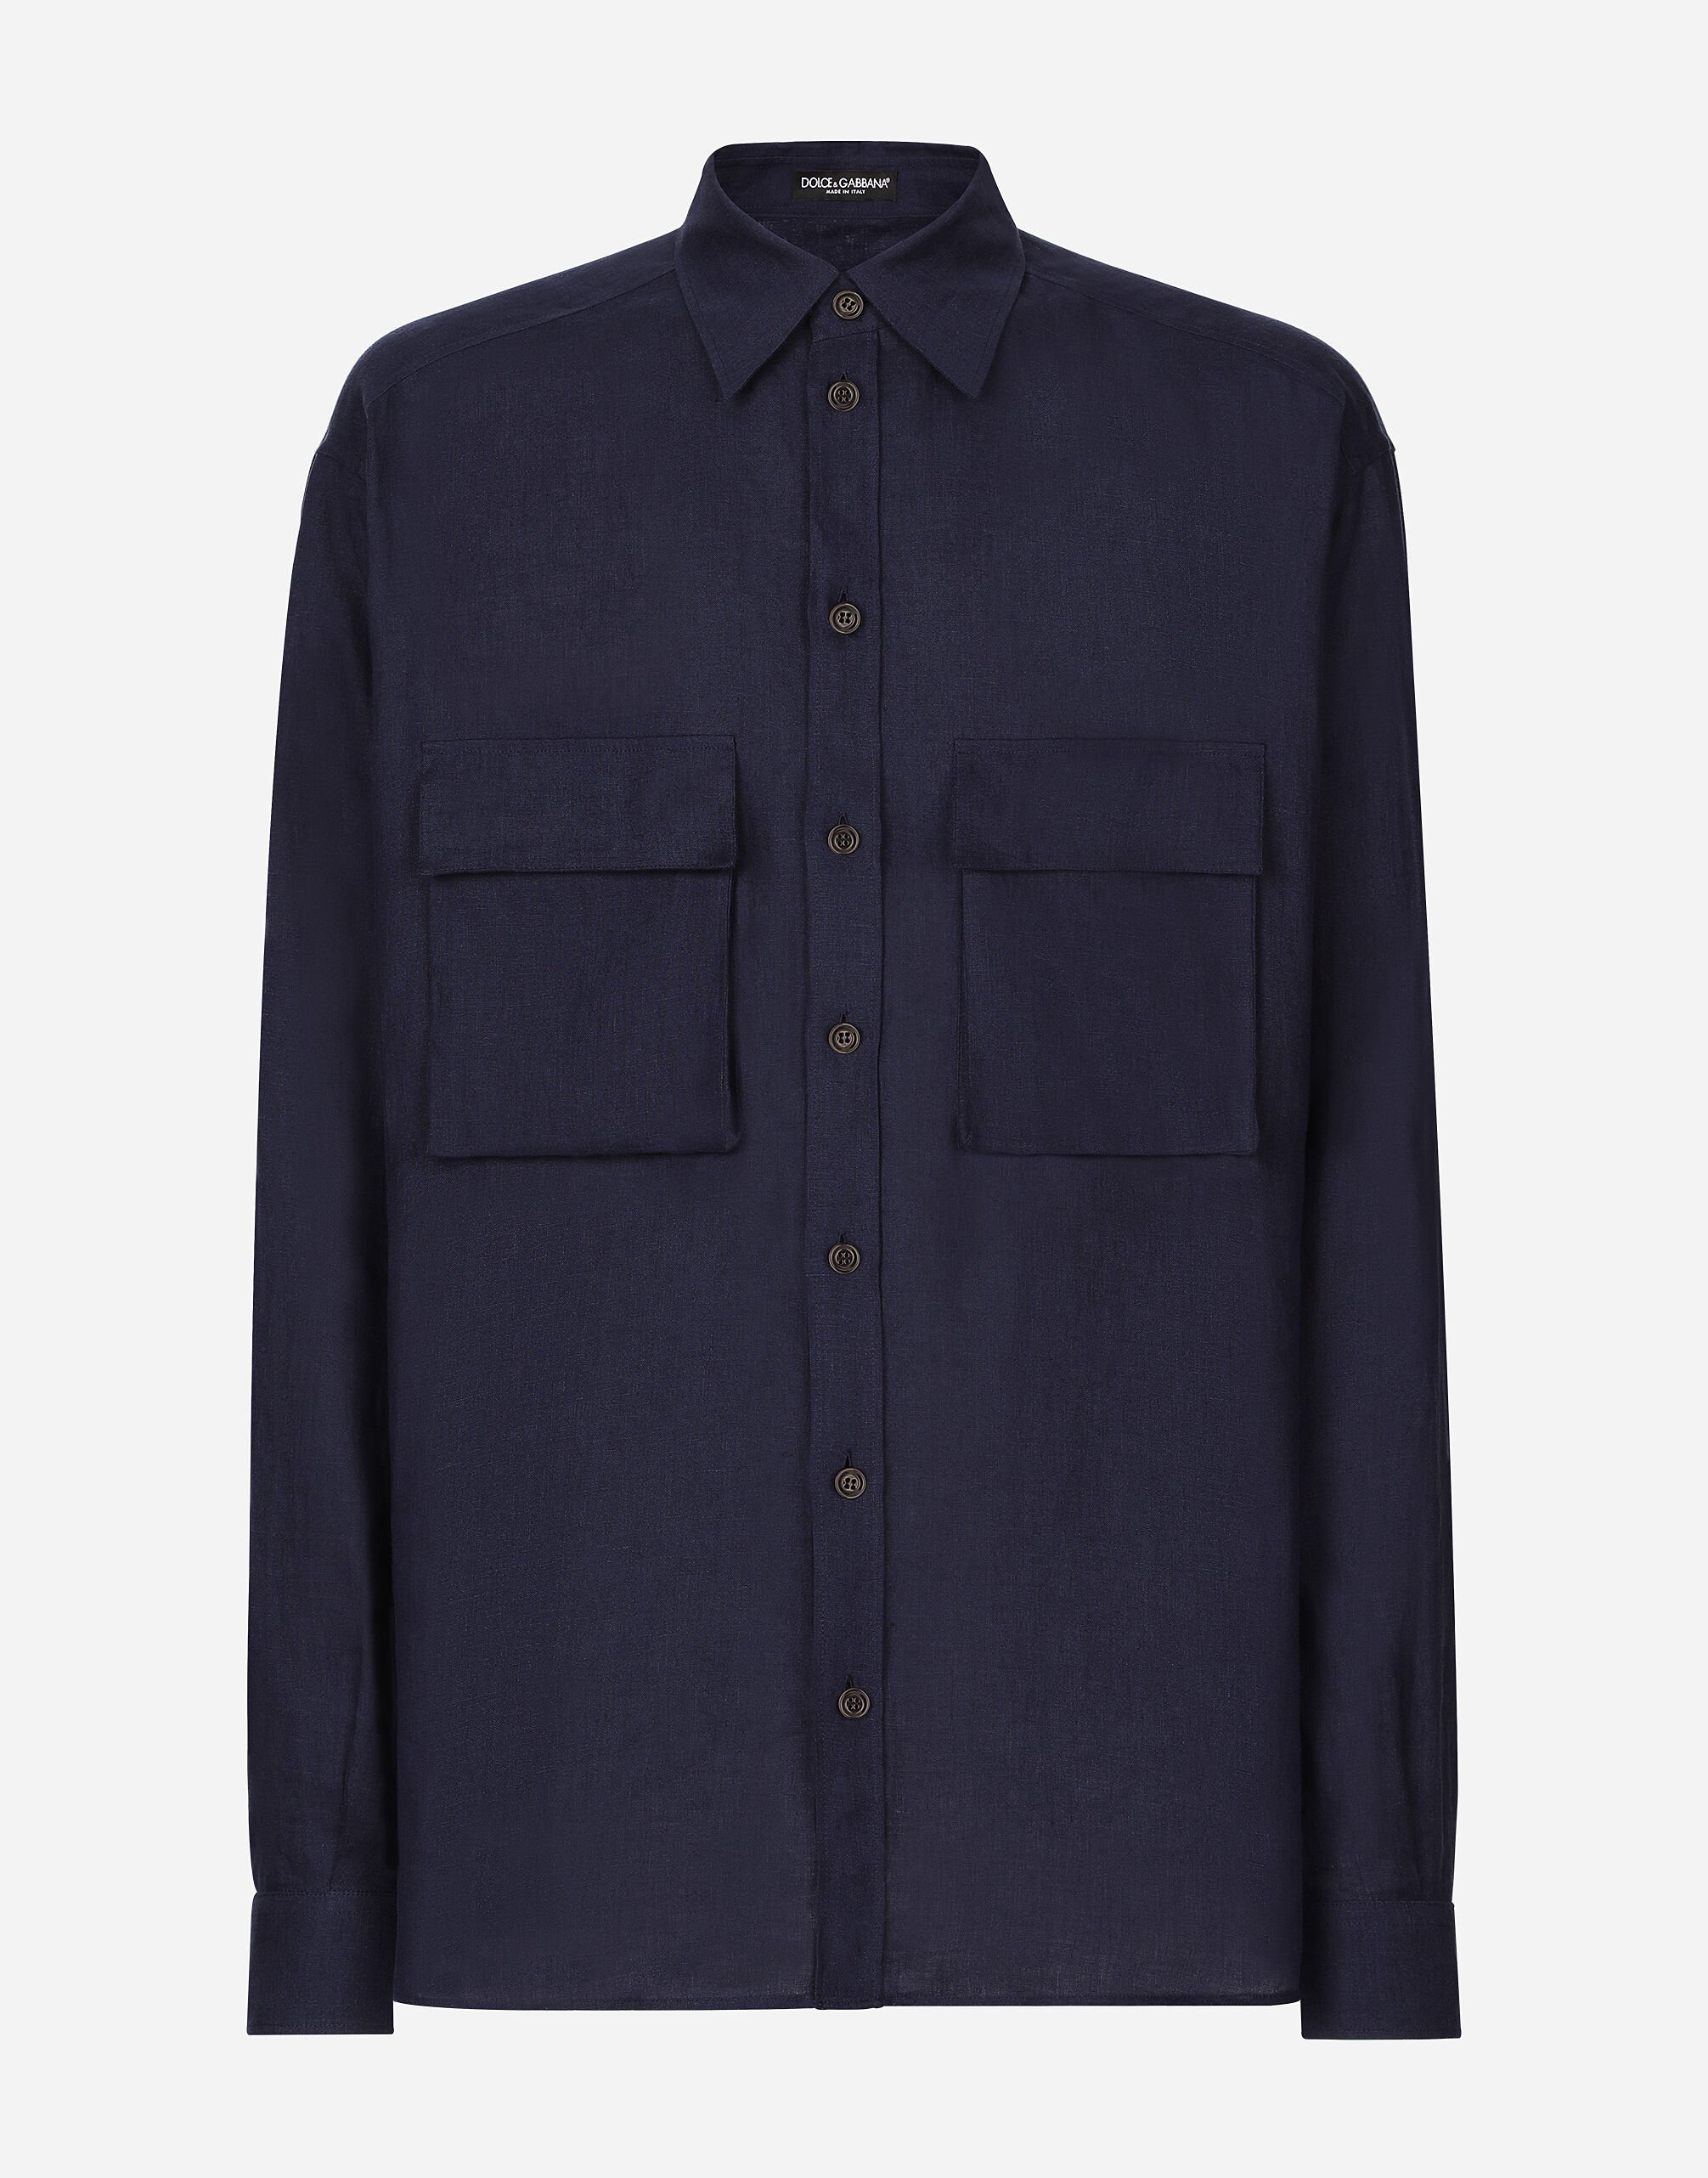 Dolce & Gabbana Oversize linen shirt with pockets Print G5JH9TIS1SG